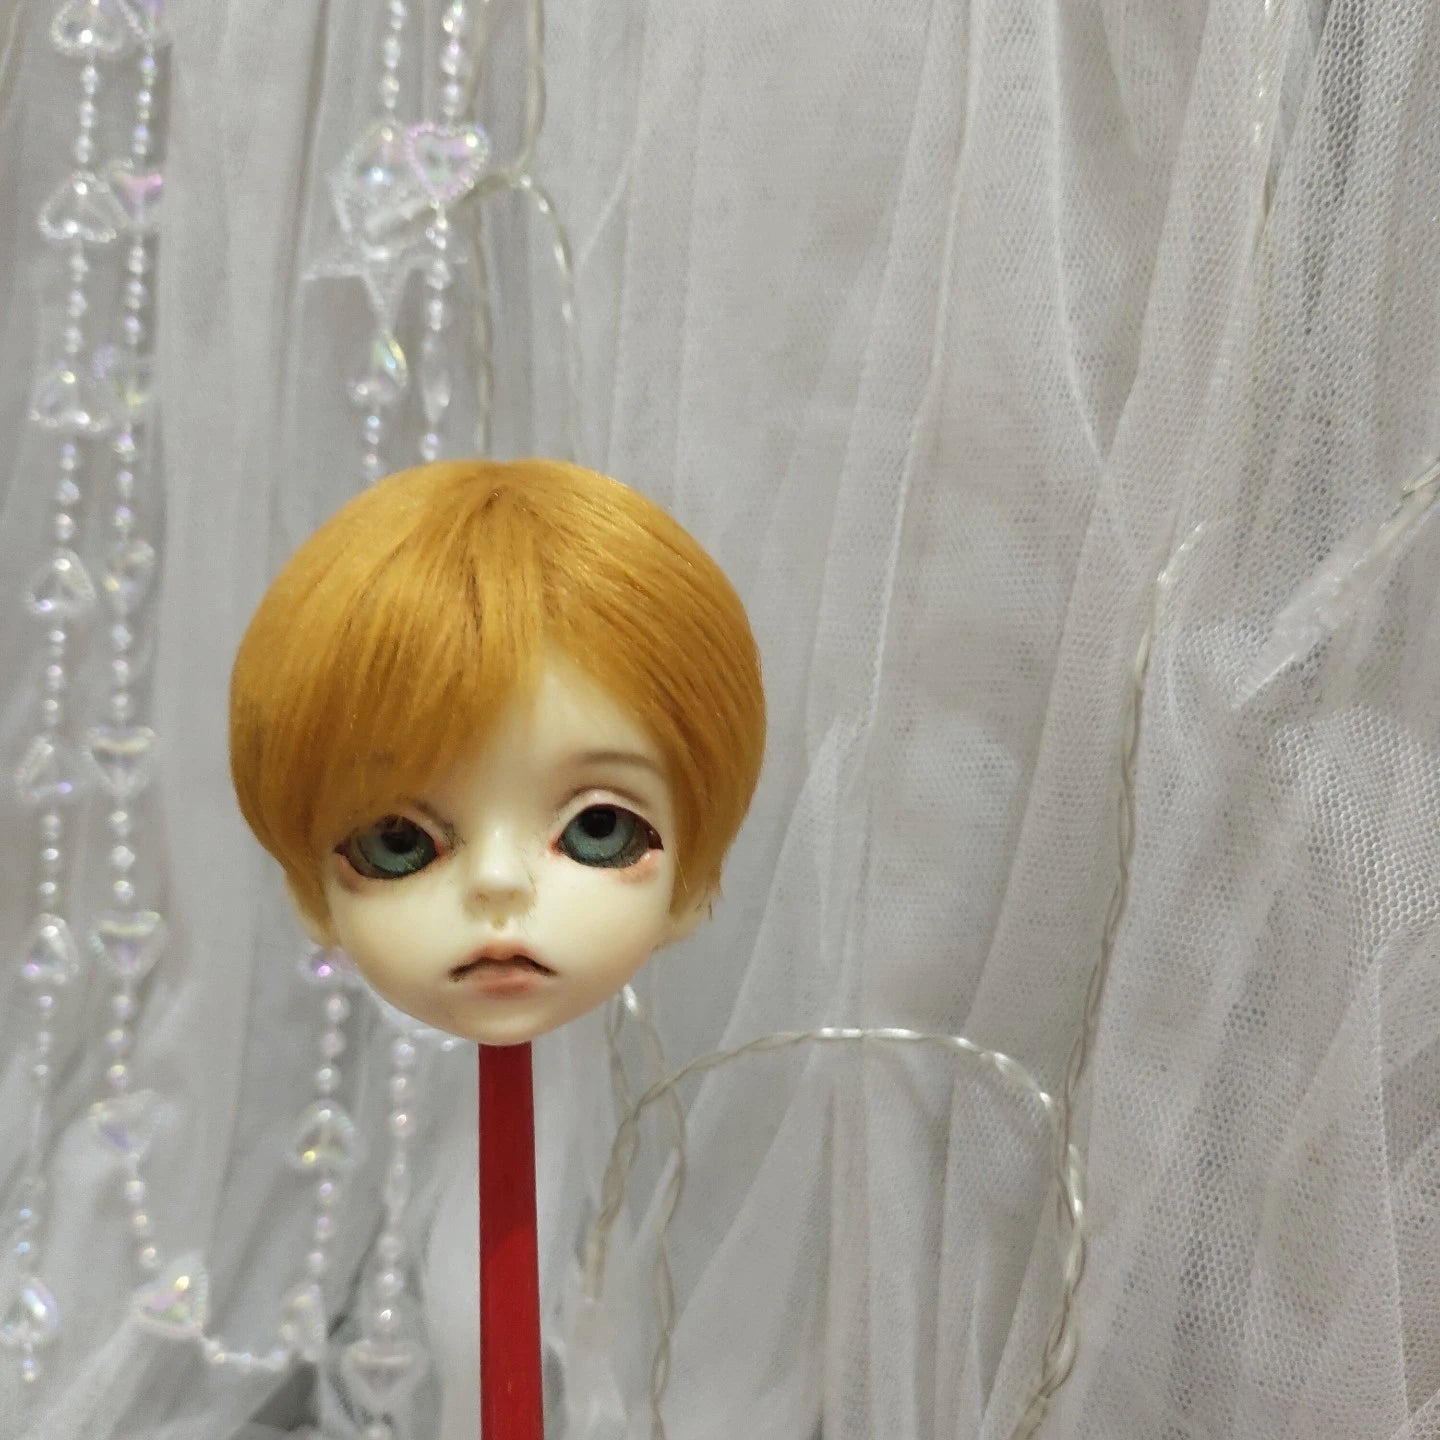 BABY HOUSE - Perruque de poupée colorée pour poupée princesse OB11, faux cheveux, peut être personnalisée, 1/8 1/6 1/4 1/3 1/12 BJD